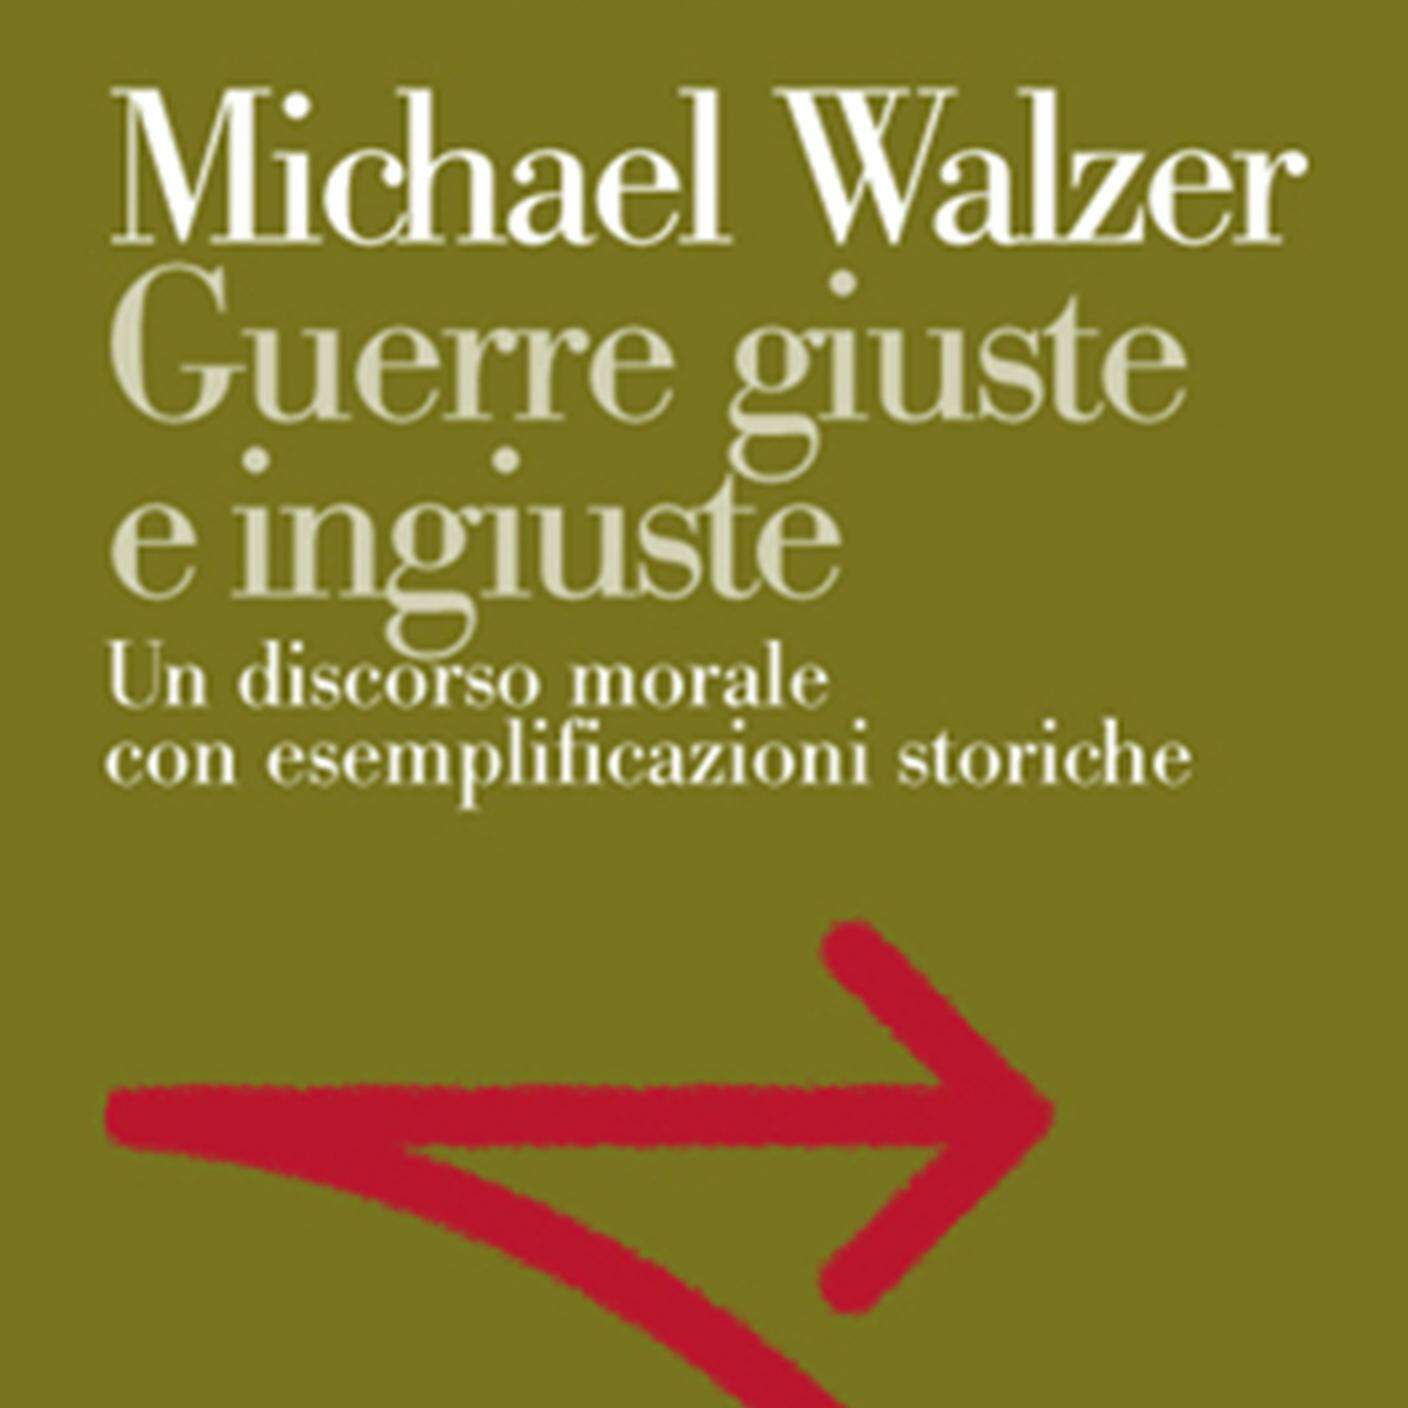 Michael Walzer, "Guerre giuste e ingiuste", Editori Laterza (dettaglio di copertina)